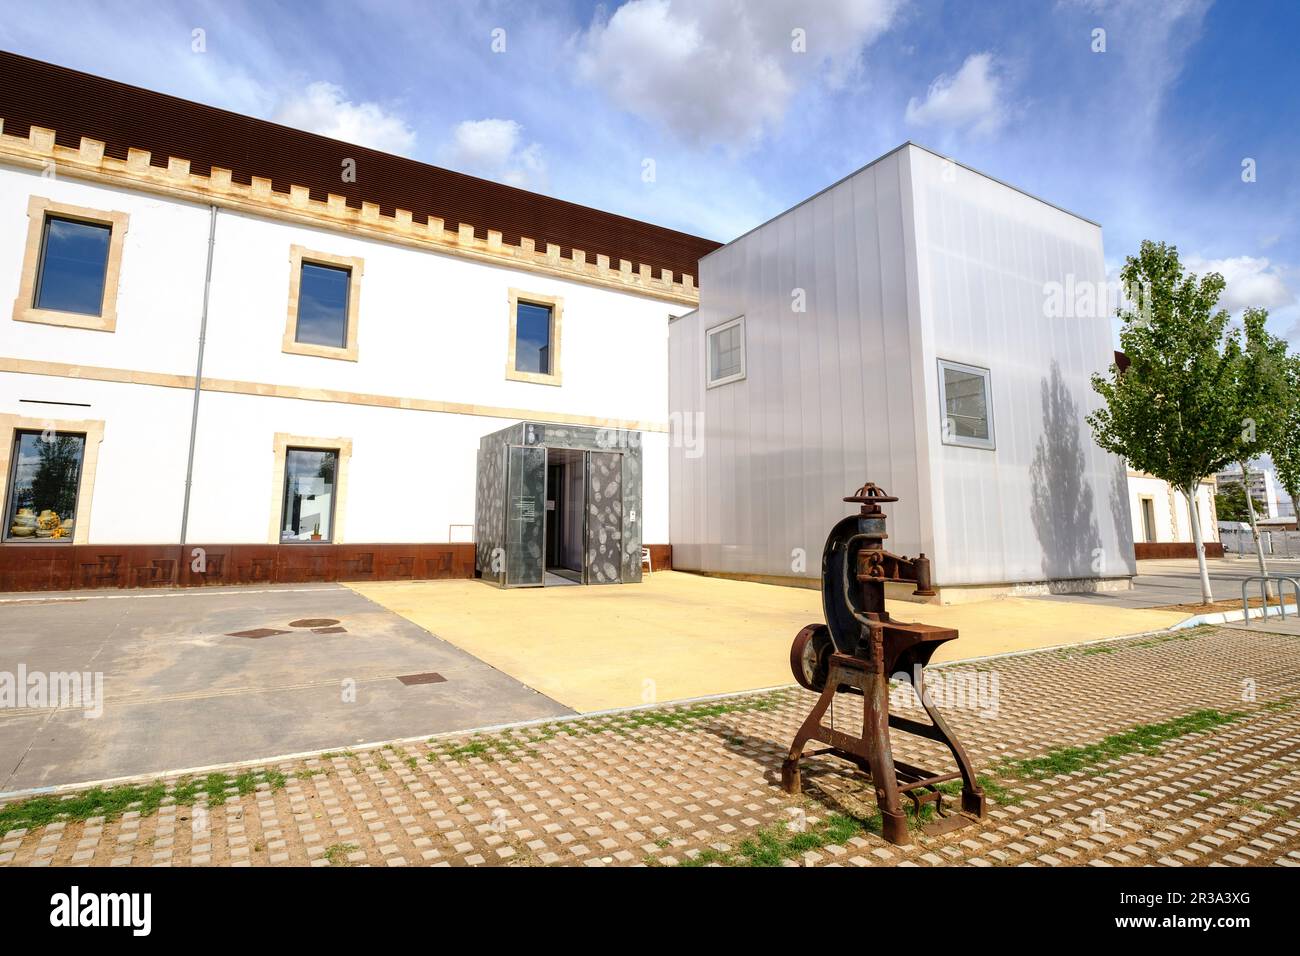 Museo del Calzado y de la Piel , Inca ,Mallorca, balearic islands, spain, europe. Stock Photo